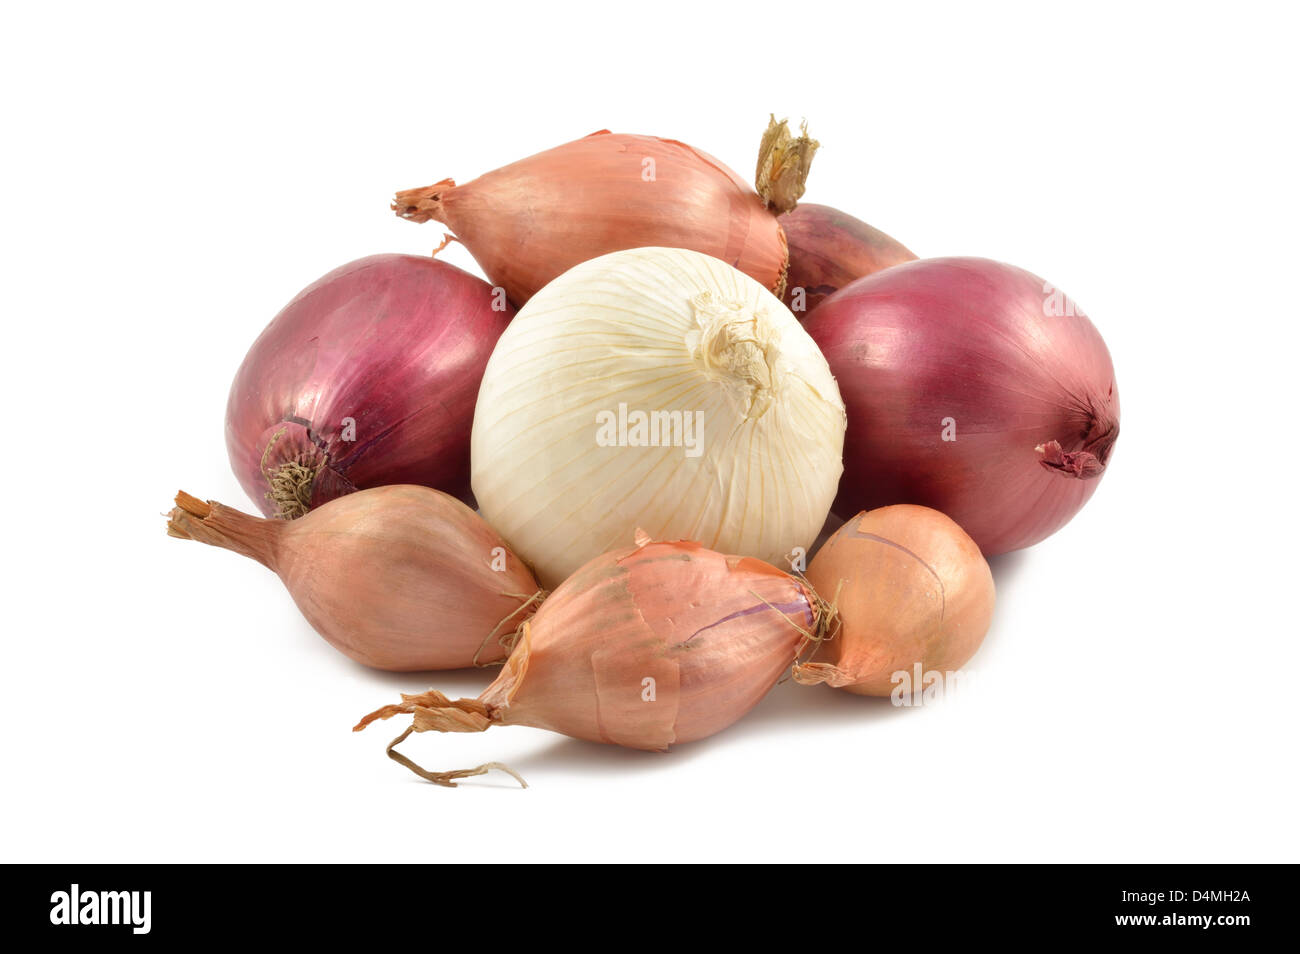 Zwiebeln, Schalotten, Knoblauch und weiße Zwiebel auf weißem Hintergrund Stockfoto